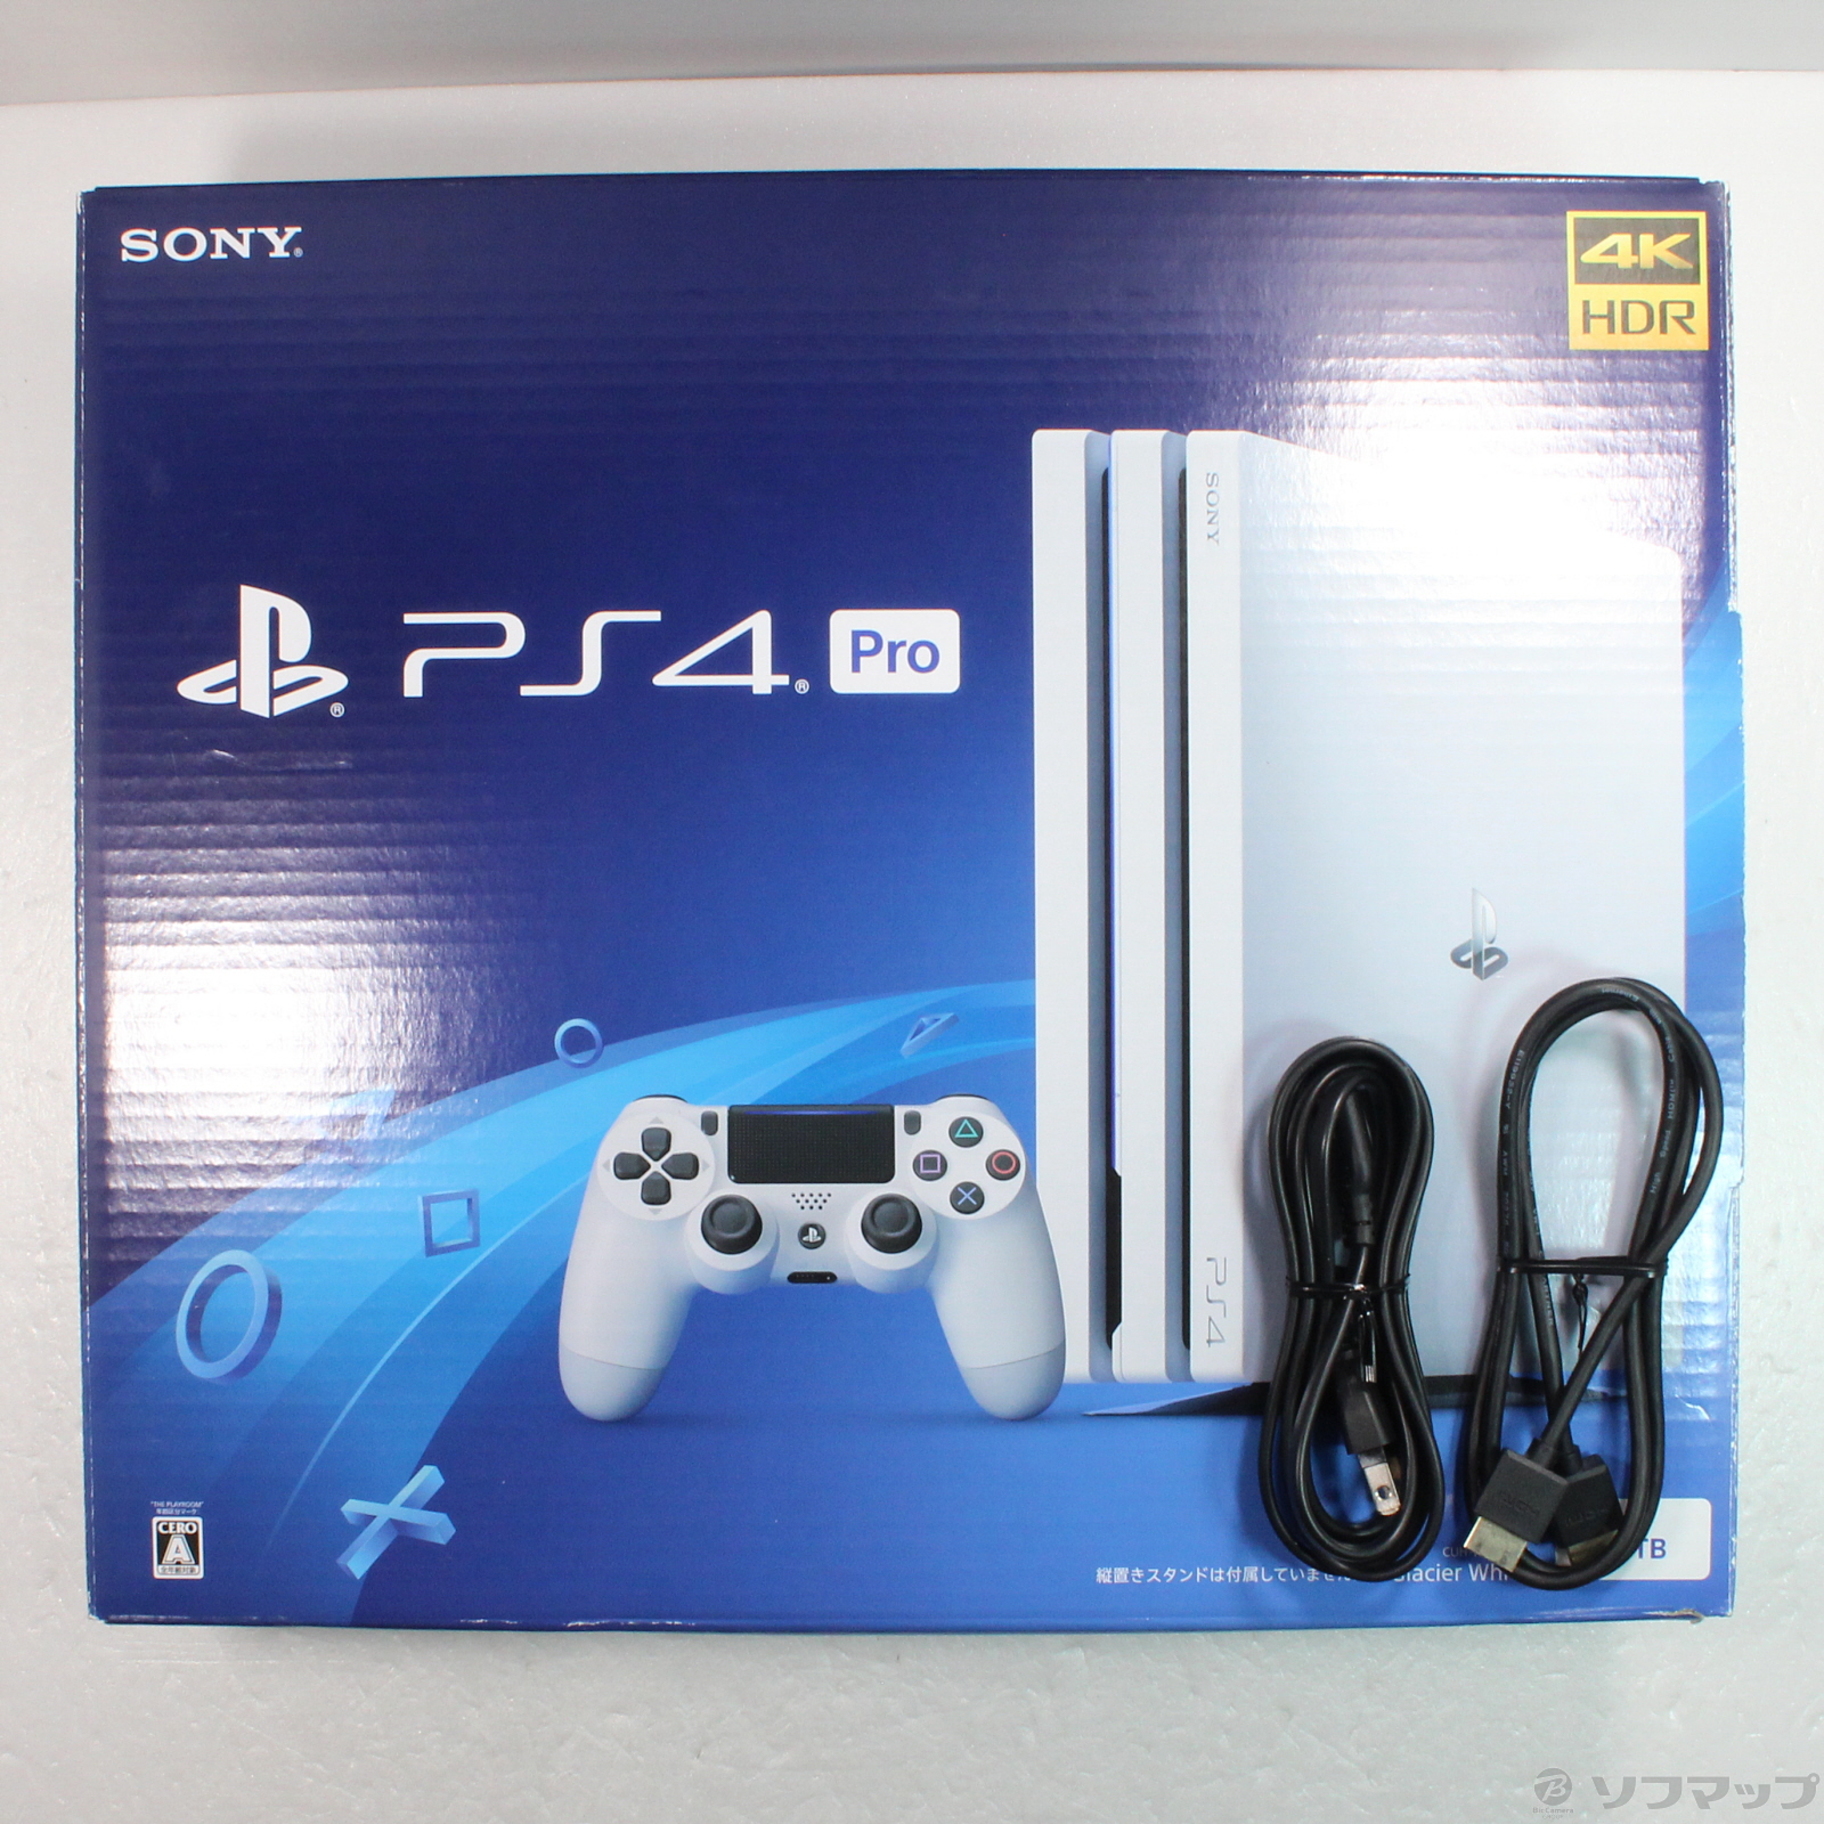 中古】PlayStation 4 Pro グレイシャー・ホワイト 1TB CUH-7200BB02 